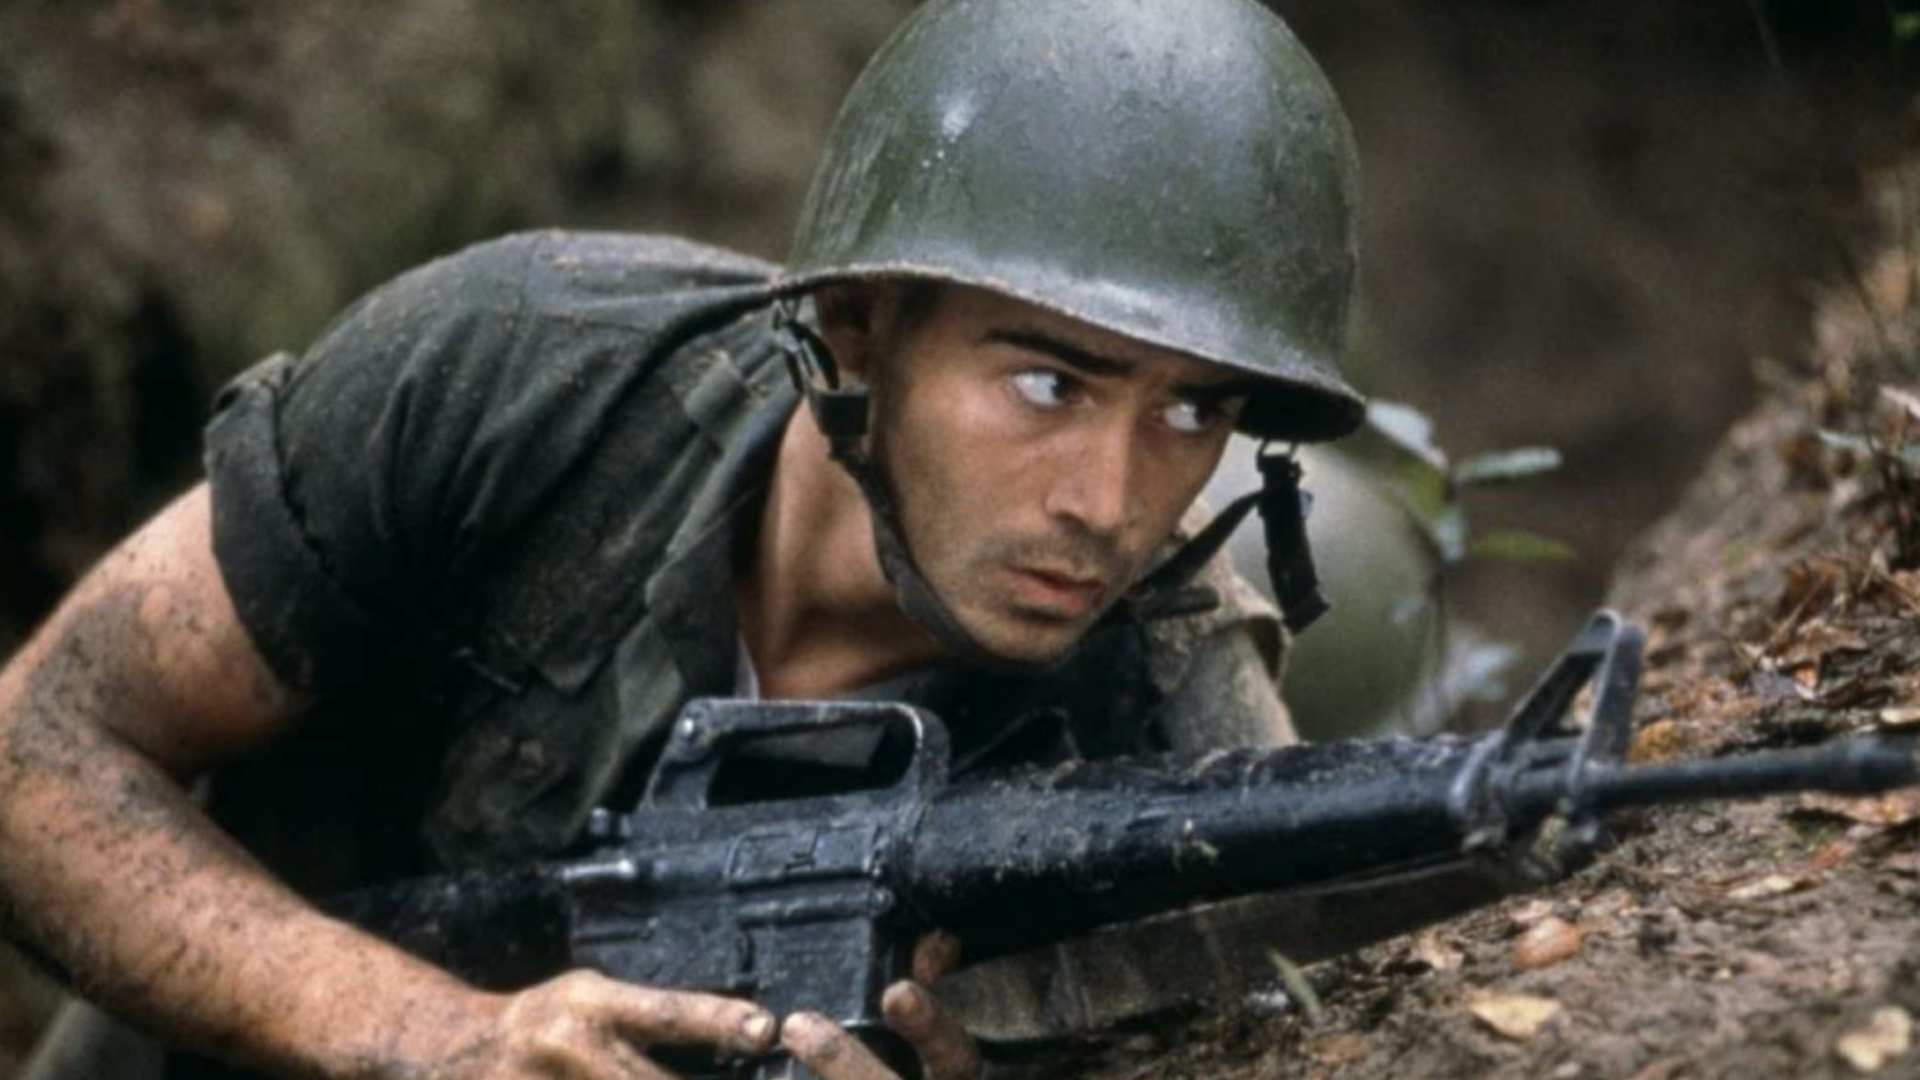 کالین فارل در نقش یک سرباز با اسلحه در فیلم Tigerland روی زمین دراز کشیده است